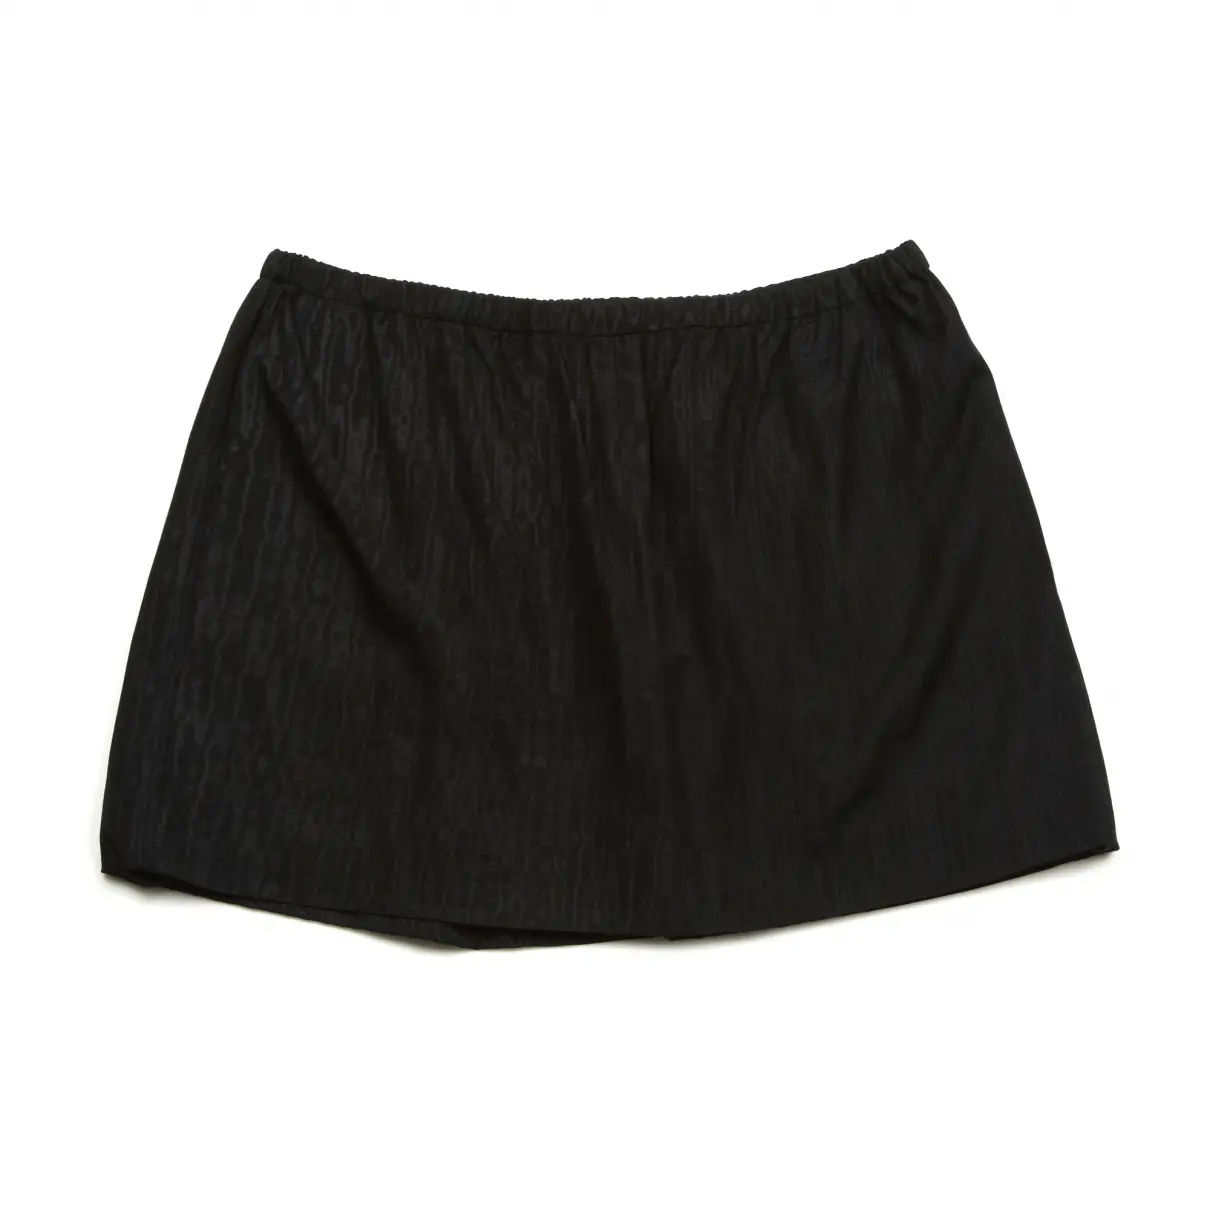 Isabel Marant Mini skirt for sale